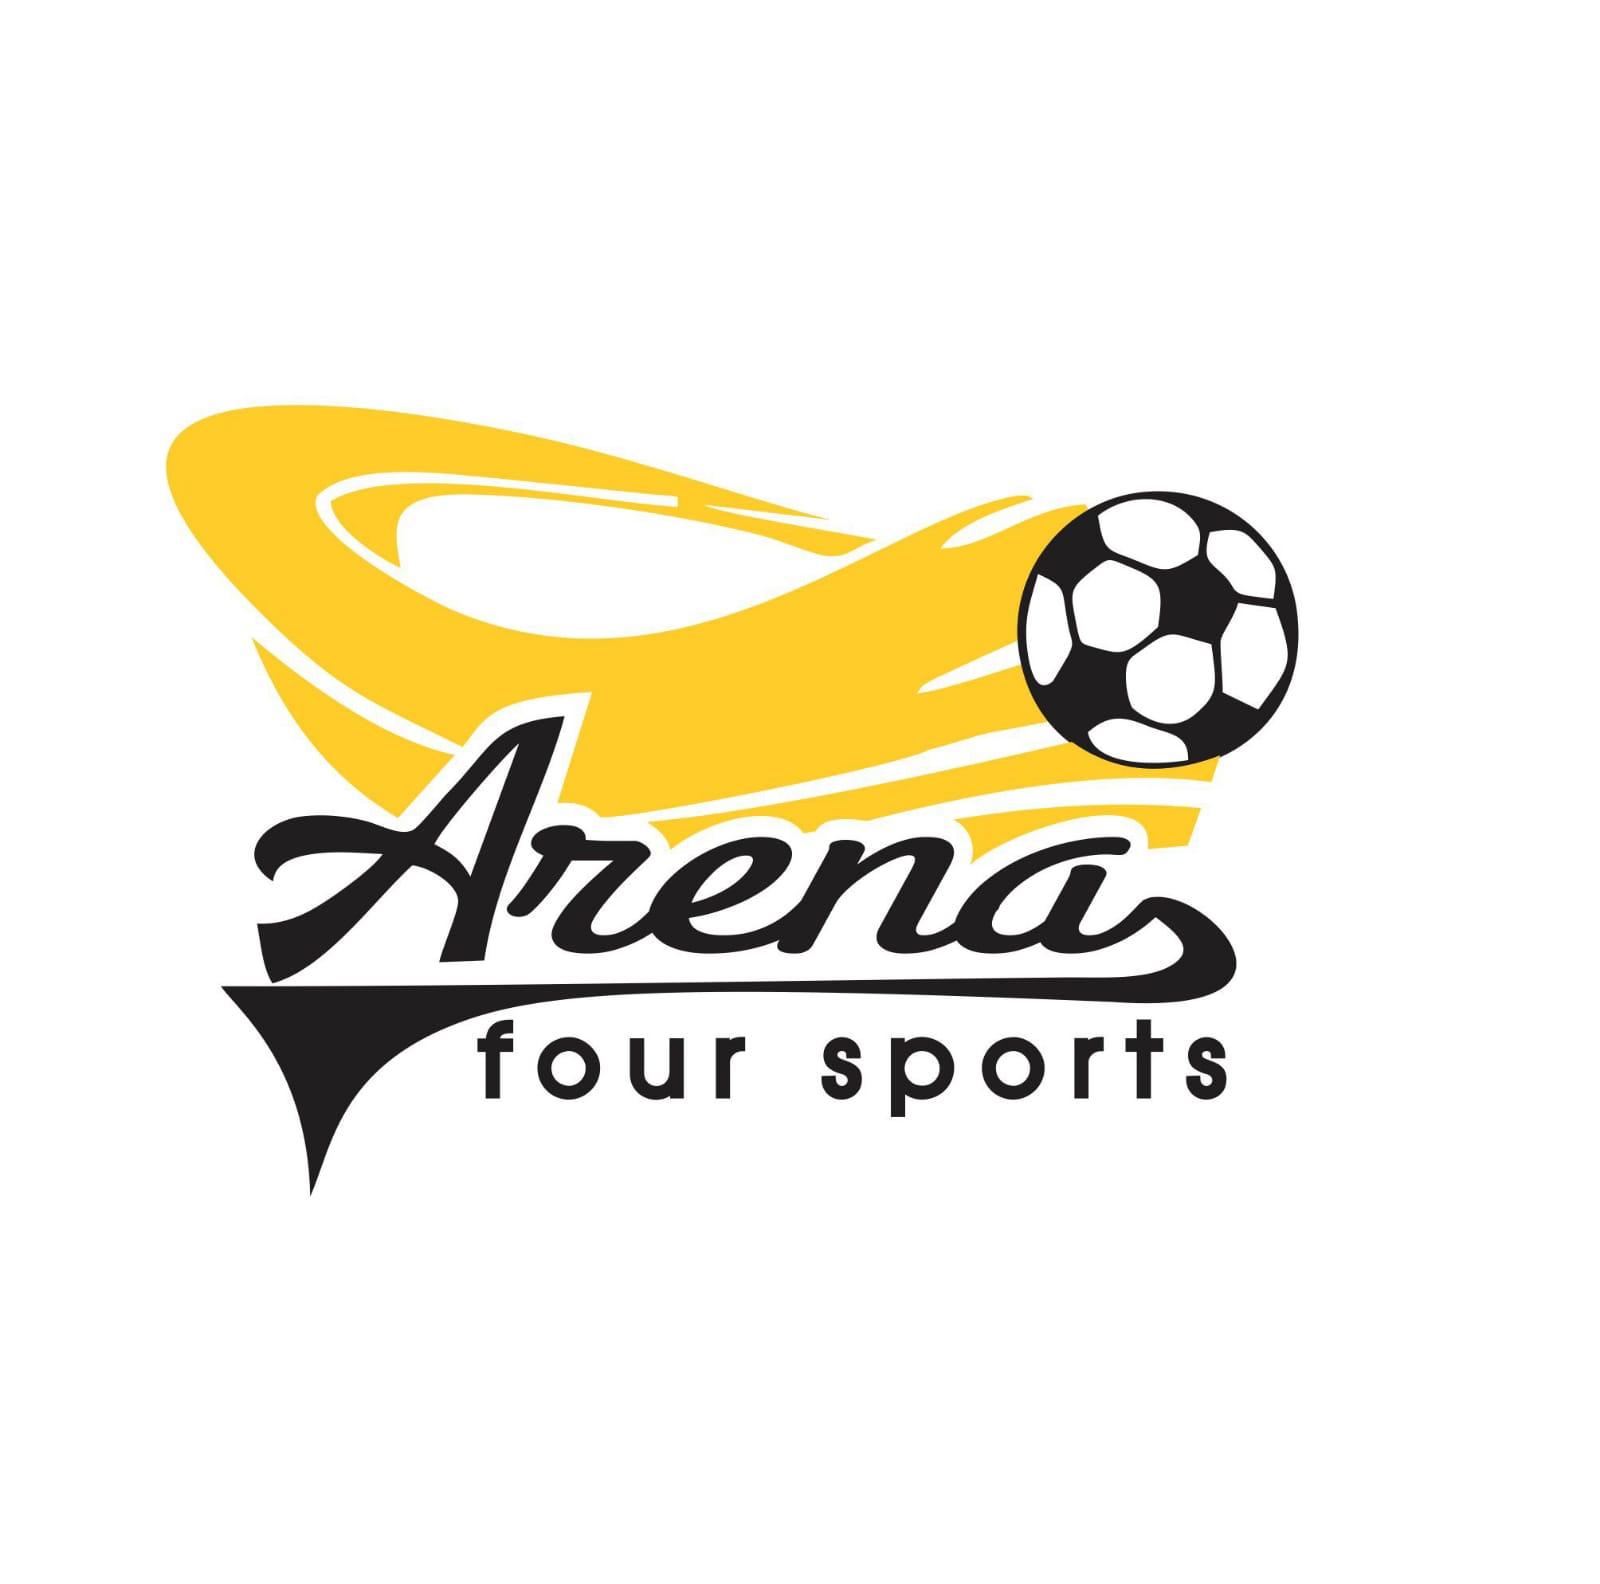 ARENA FOUR SPORTS